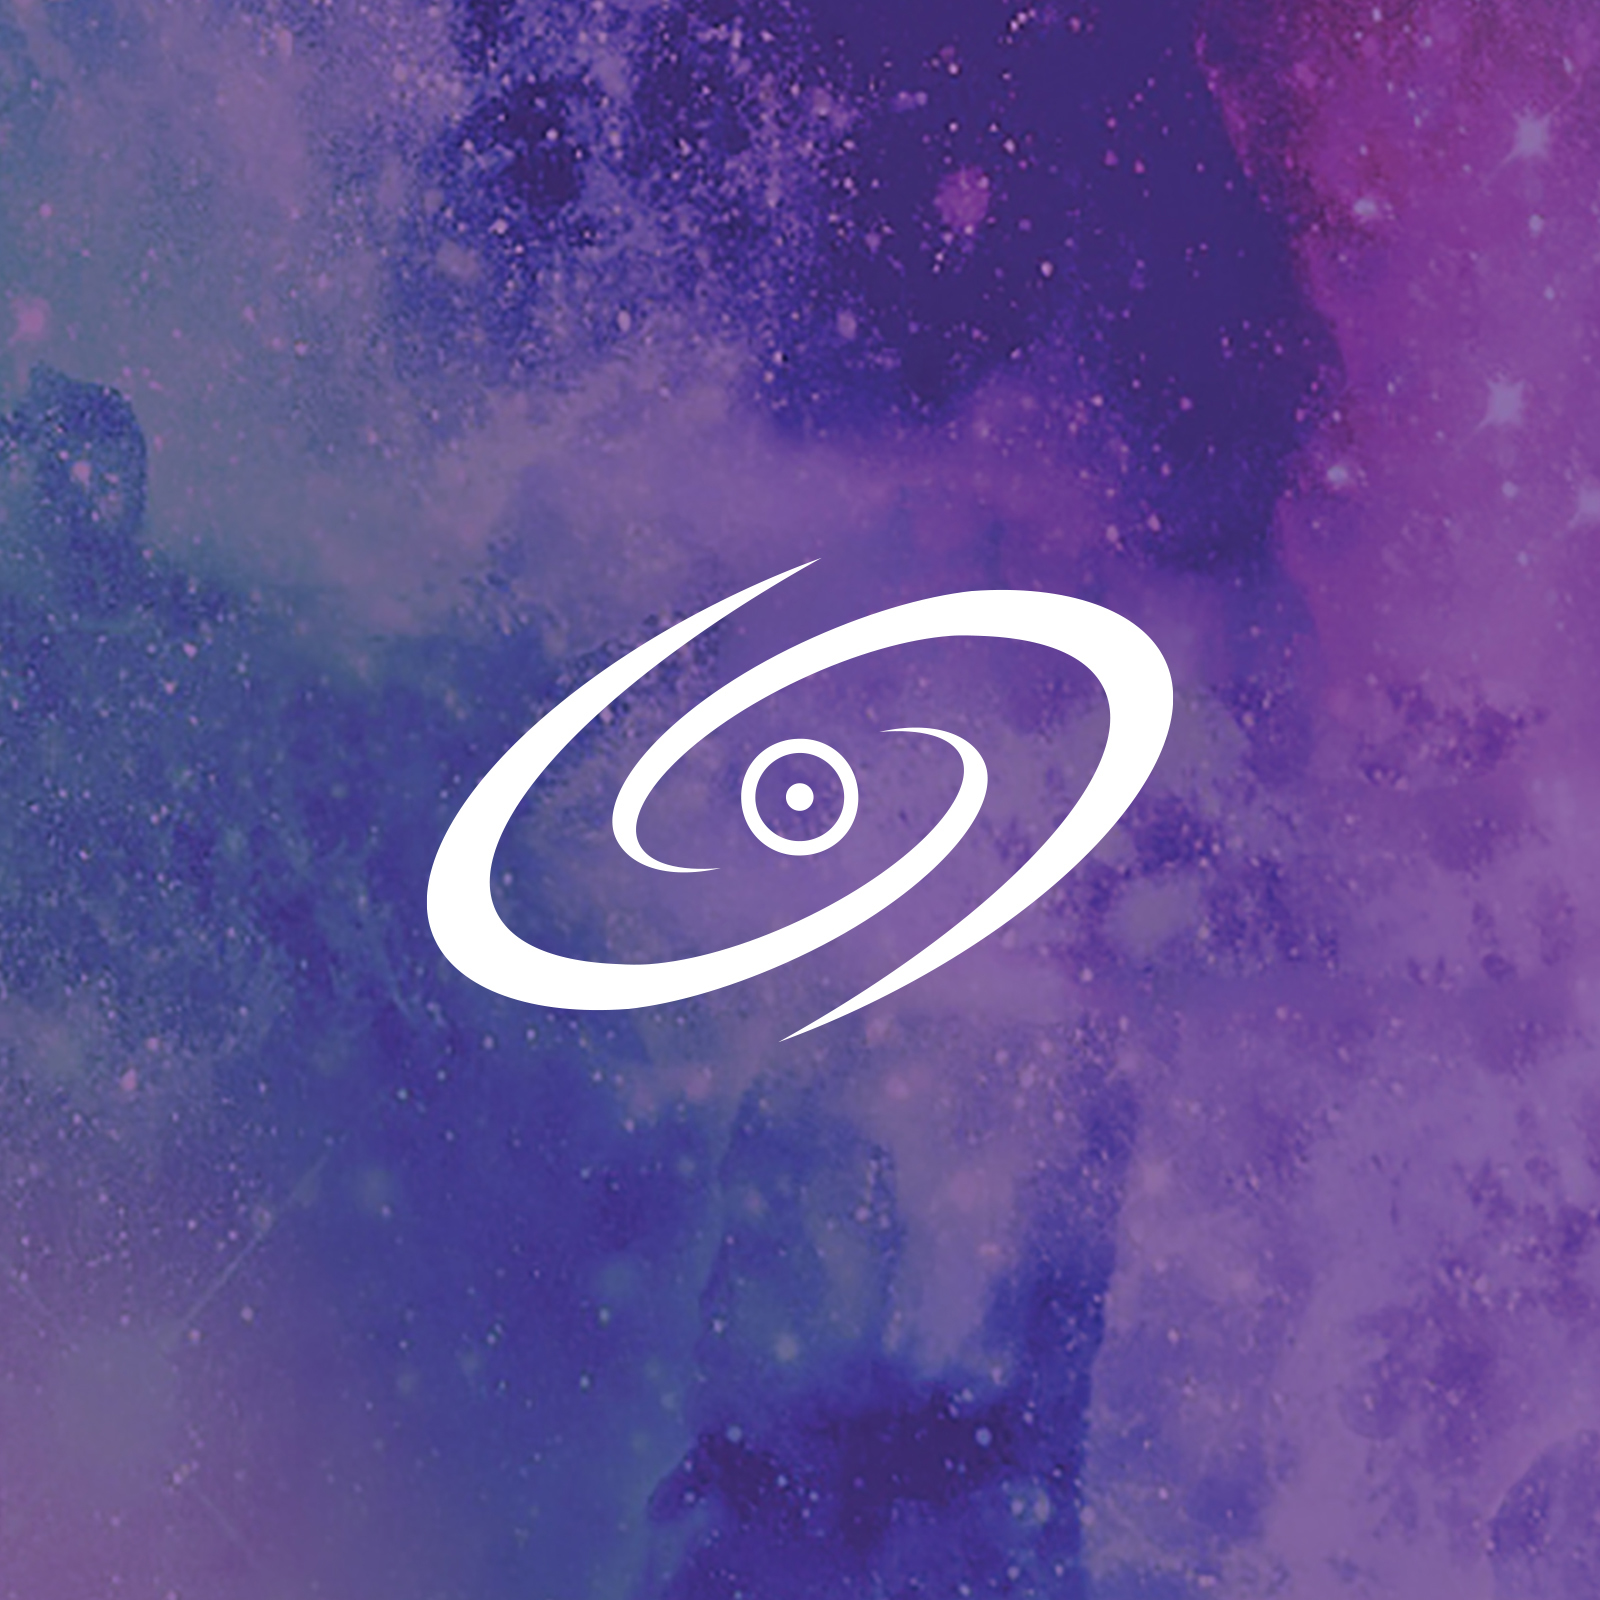 Celestial Sound logo graphic